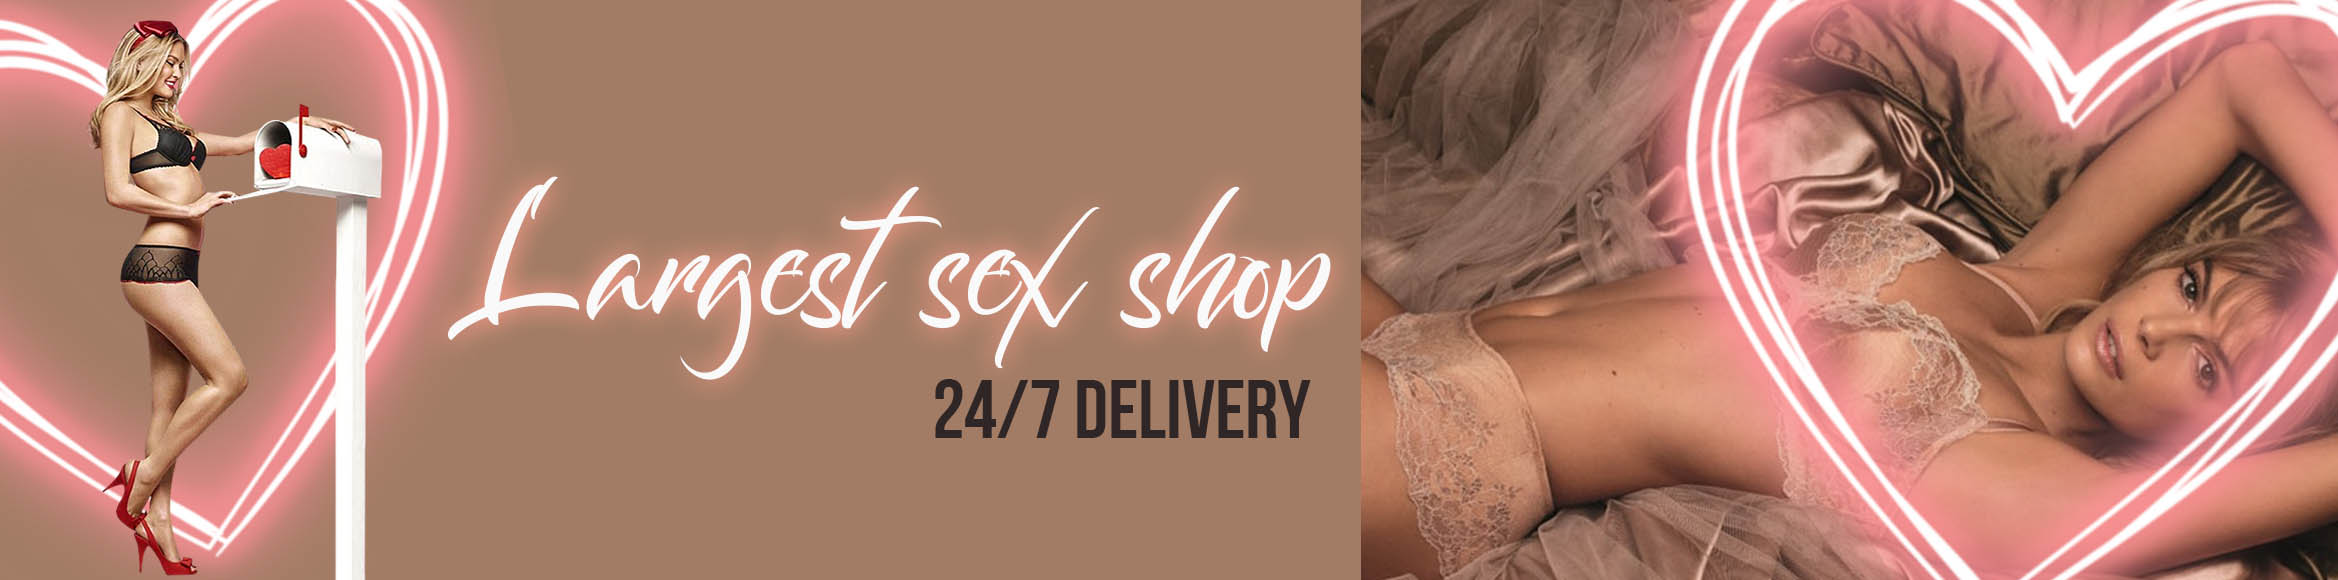 Website Banner design for sex shop| elissdigital.art